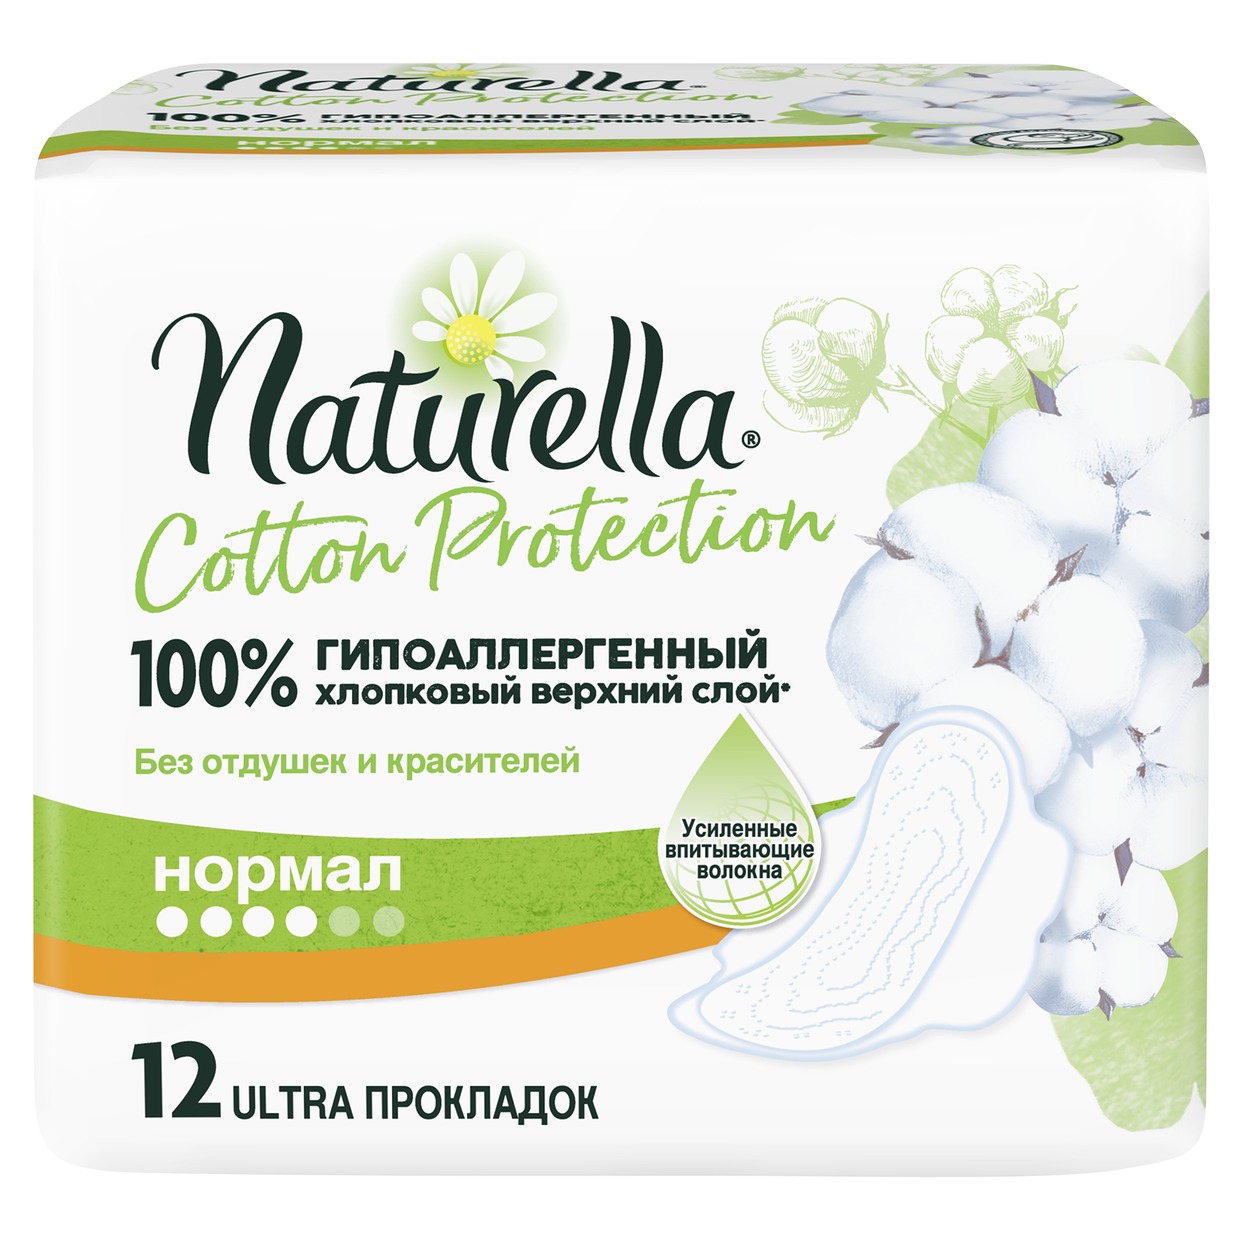 NATURELLA Cotton Protection Женские гигиенические прокладки нормал 12шт